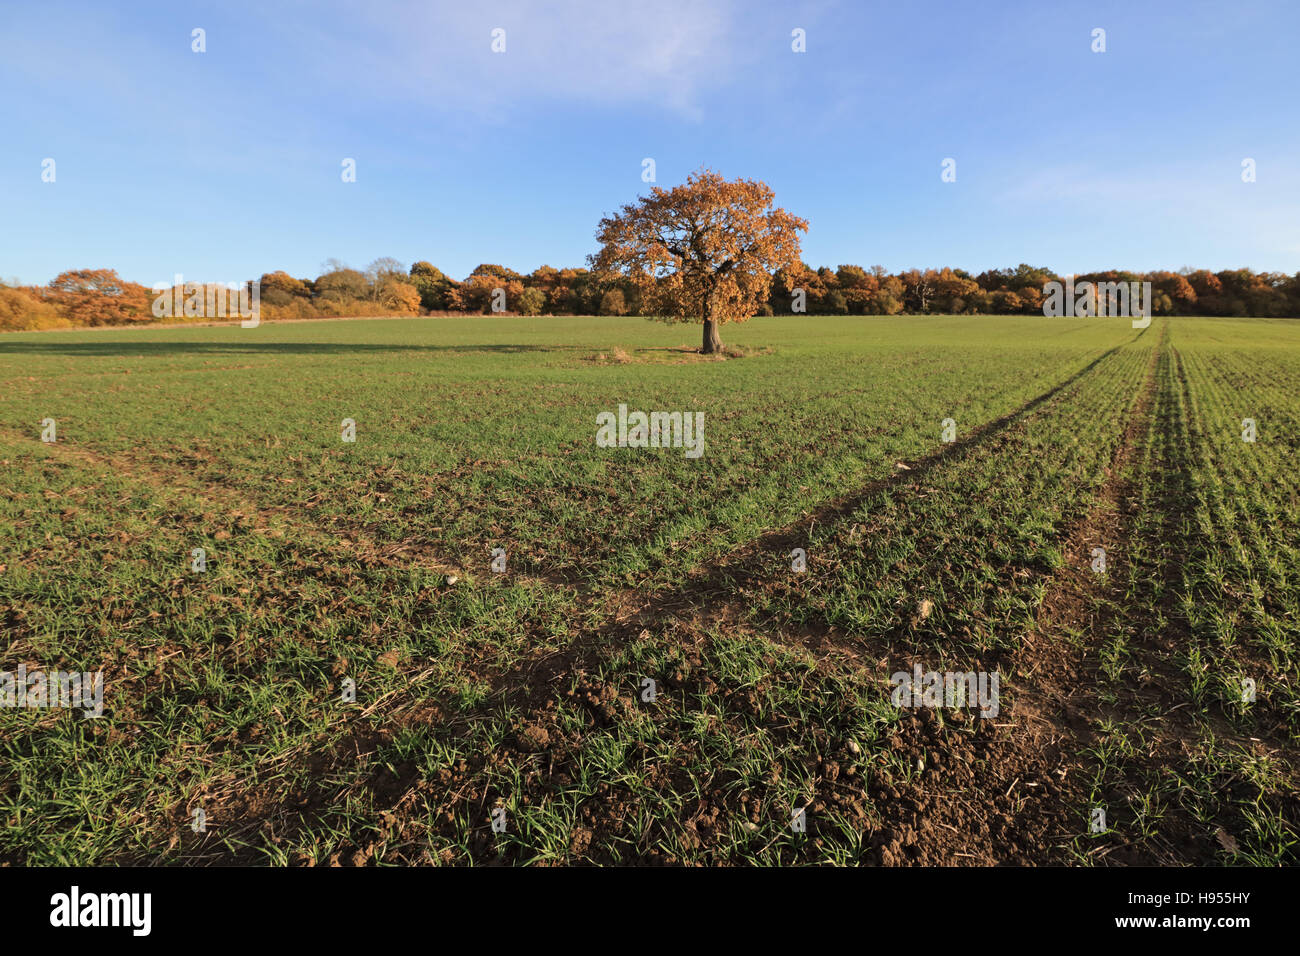 Surrey Chessington, Royaume-Uni. 18 Nov, 2016. Ciel bleu dans l'après-midi soleil à Chessington, dans le Surrey, où un seul arbre de chêne se dresse dans un champ de blé d'hiver montrant environ 10 cm (4 po) de la croissance. Credit : Julia Gavin UK/Alamy Live News Banque D'Images